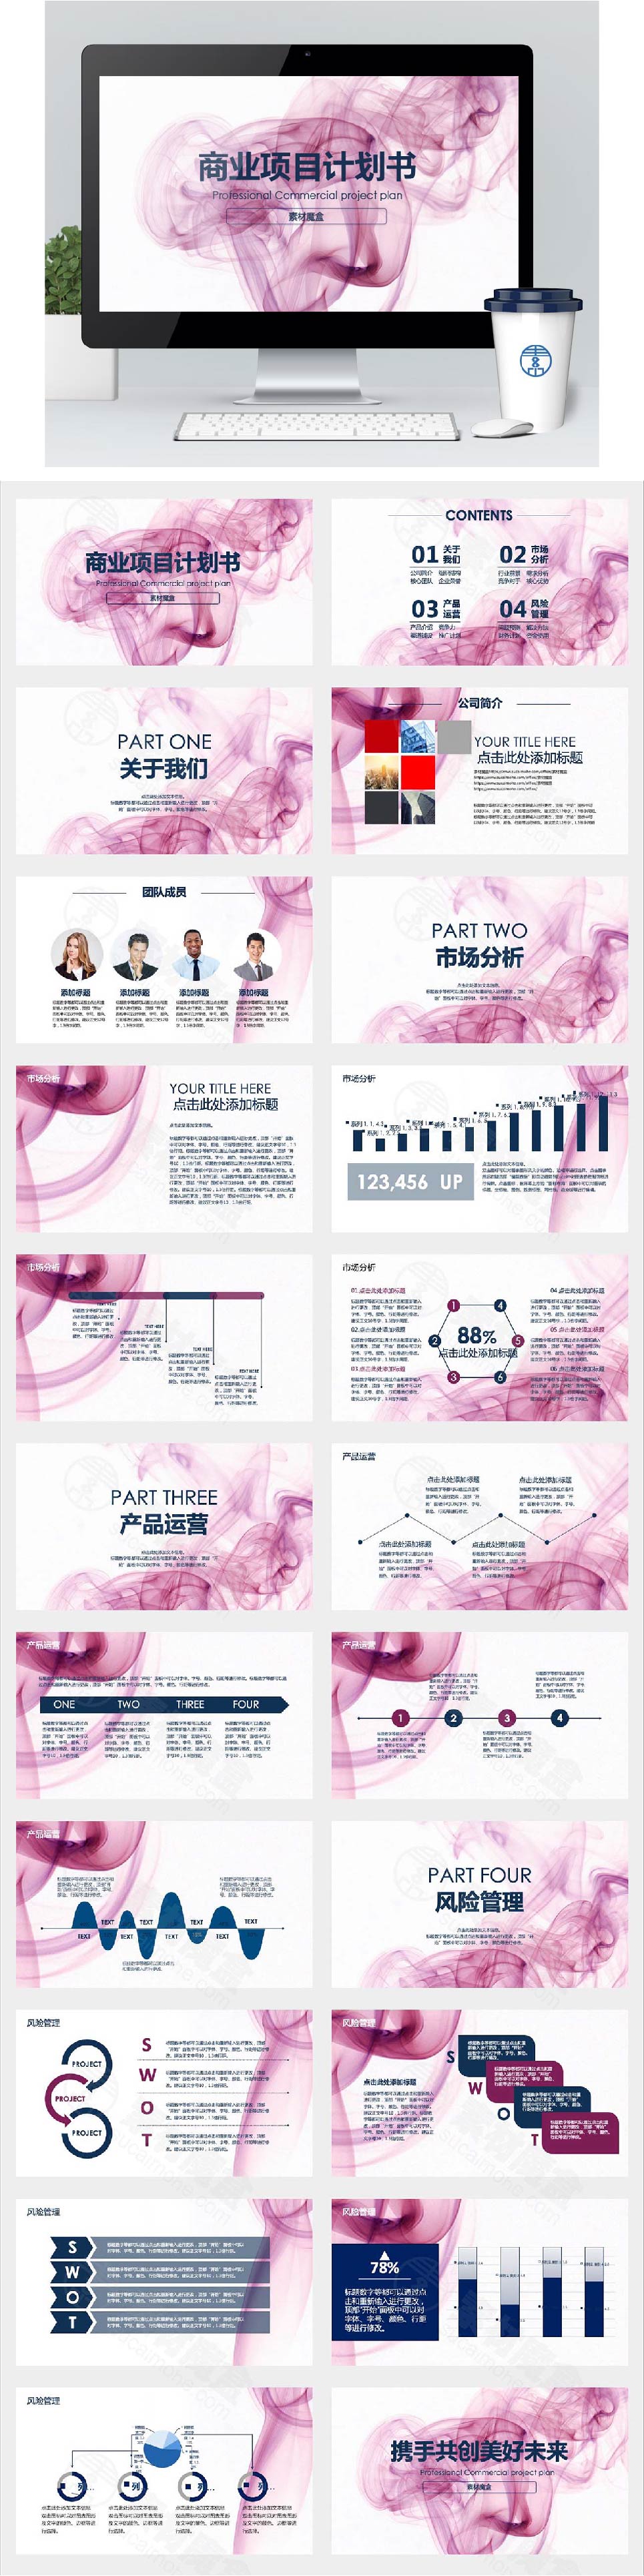 粉红色喷雾品牌发布会计划书PPT模板